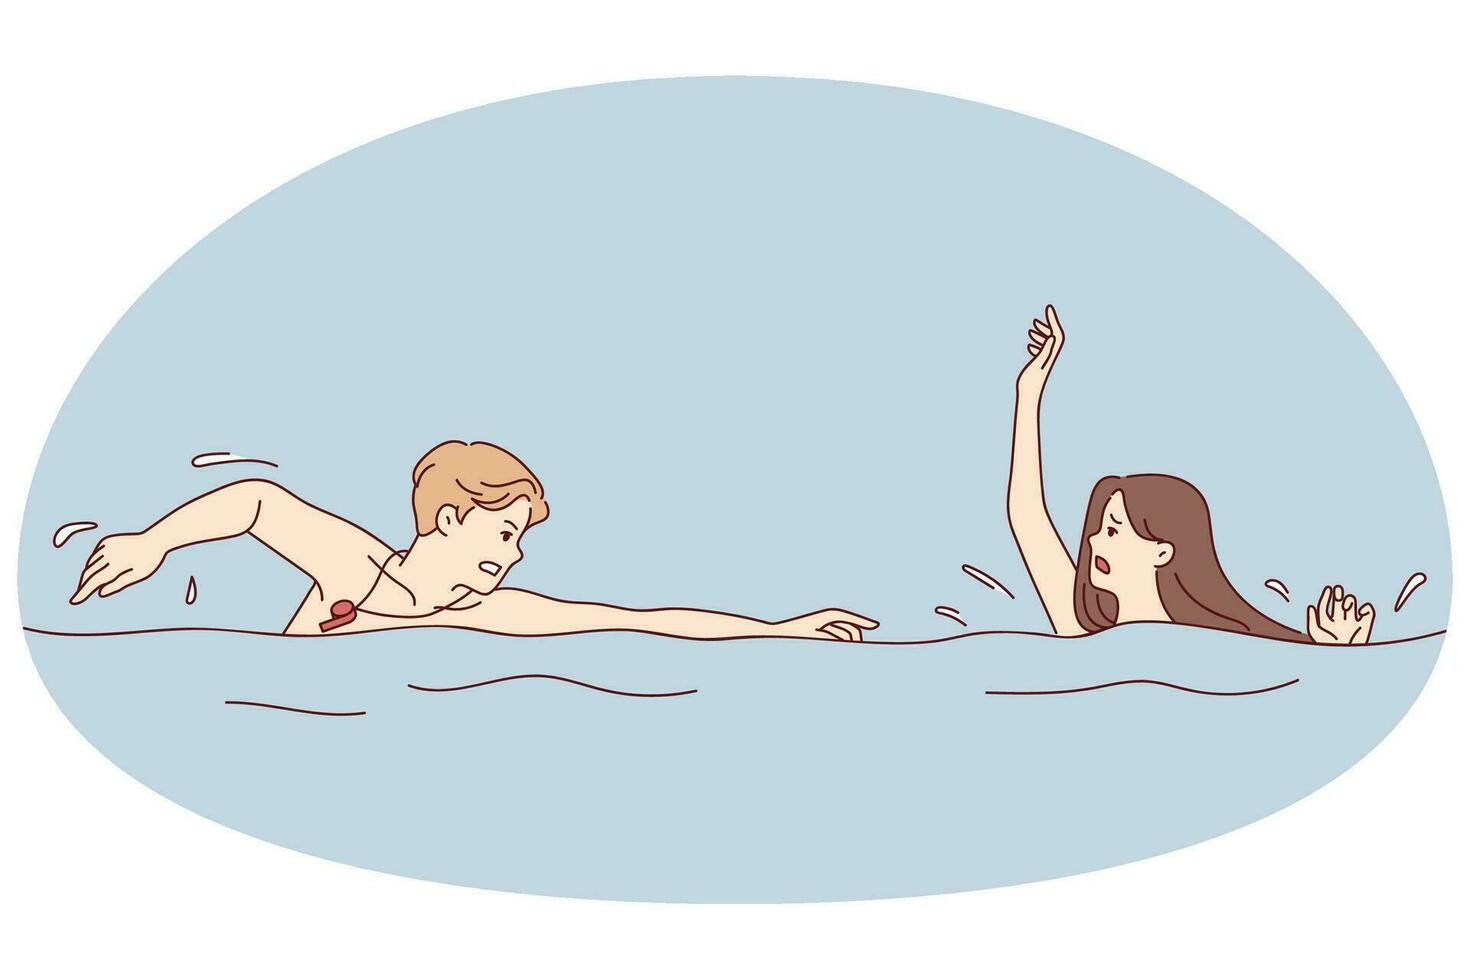 masculino Guardia nadando a estresado hembra hundimiento en agua. salvador prisa a preocupado hembra ahogo en mar o piscina. vector ilustración.